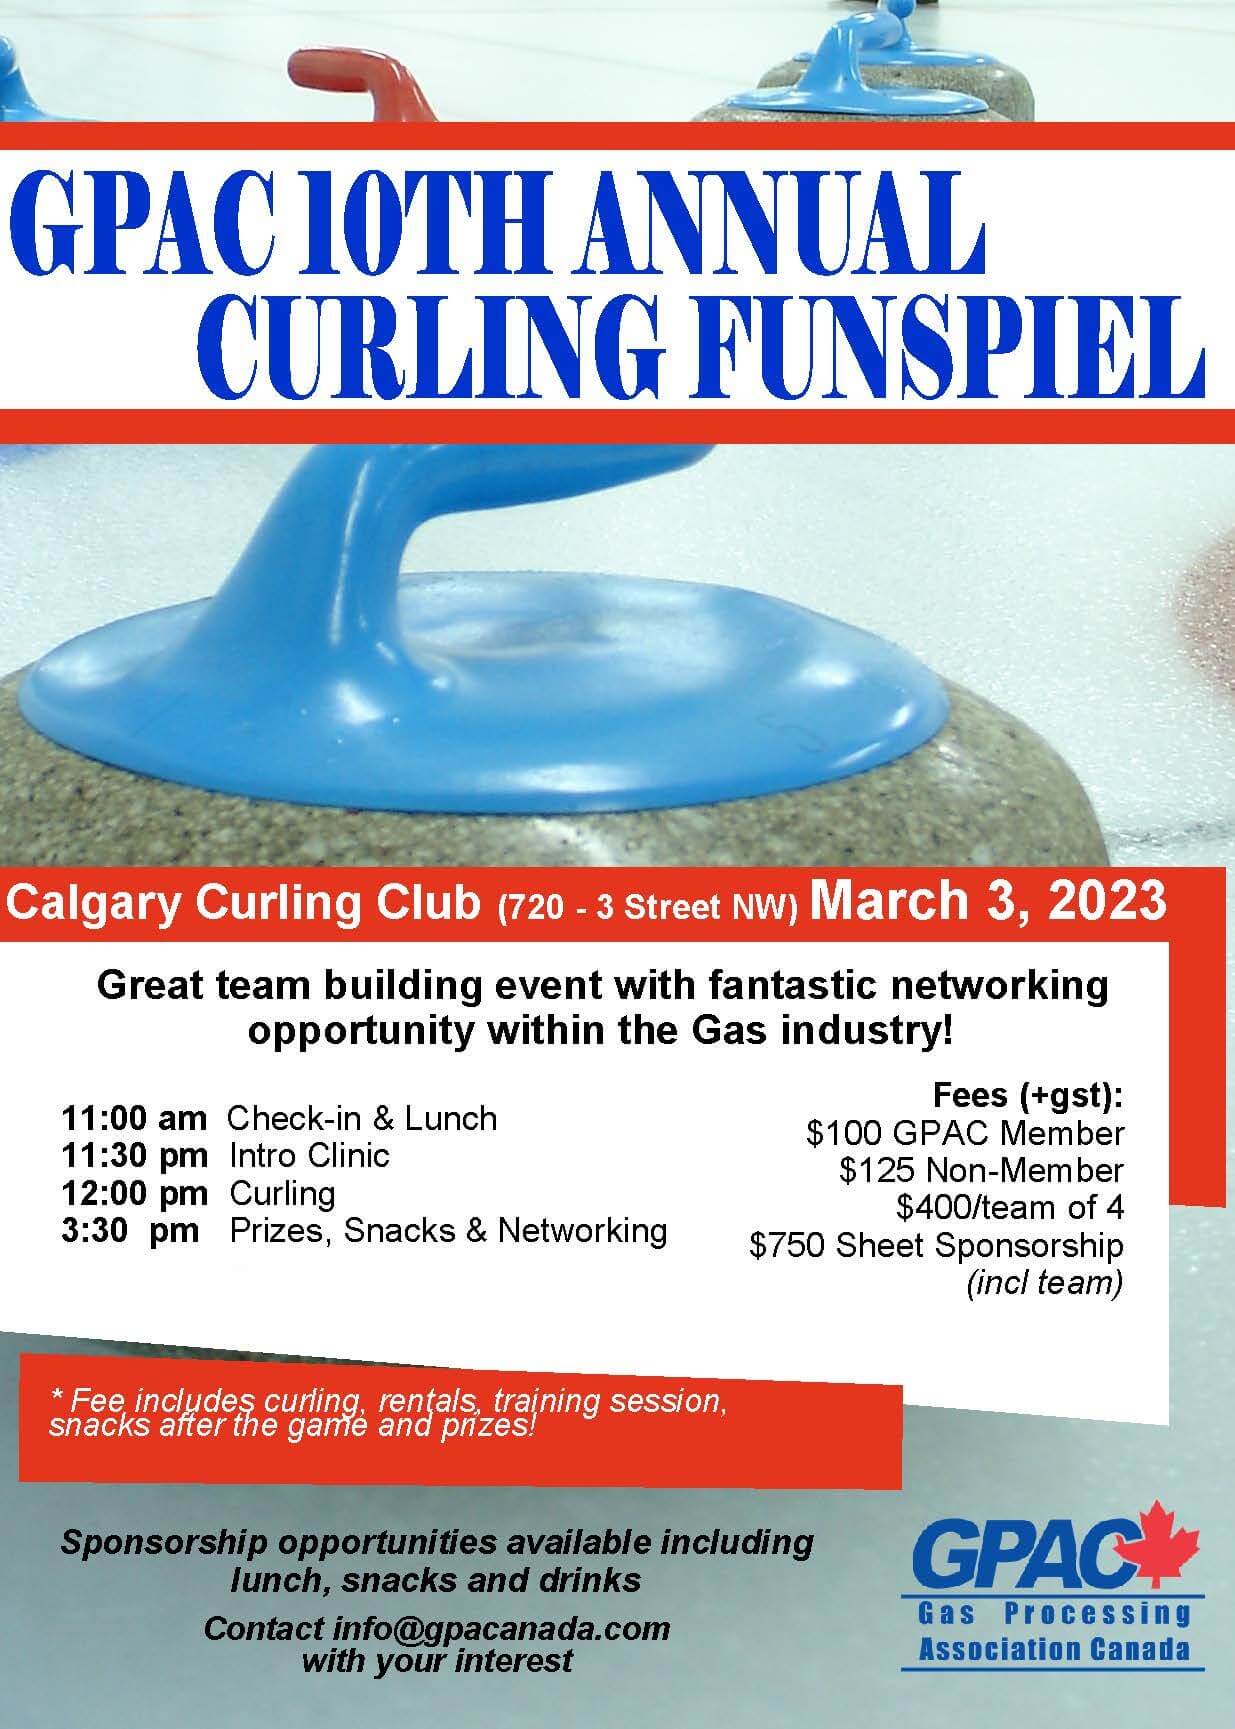 GPAC 10th Annual Curling Funspiel